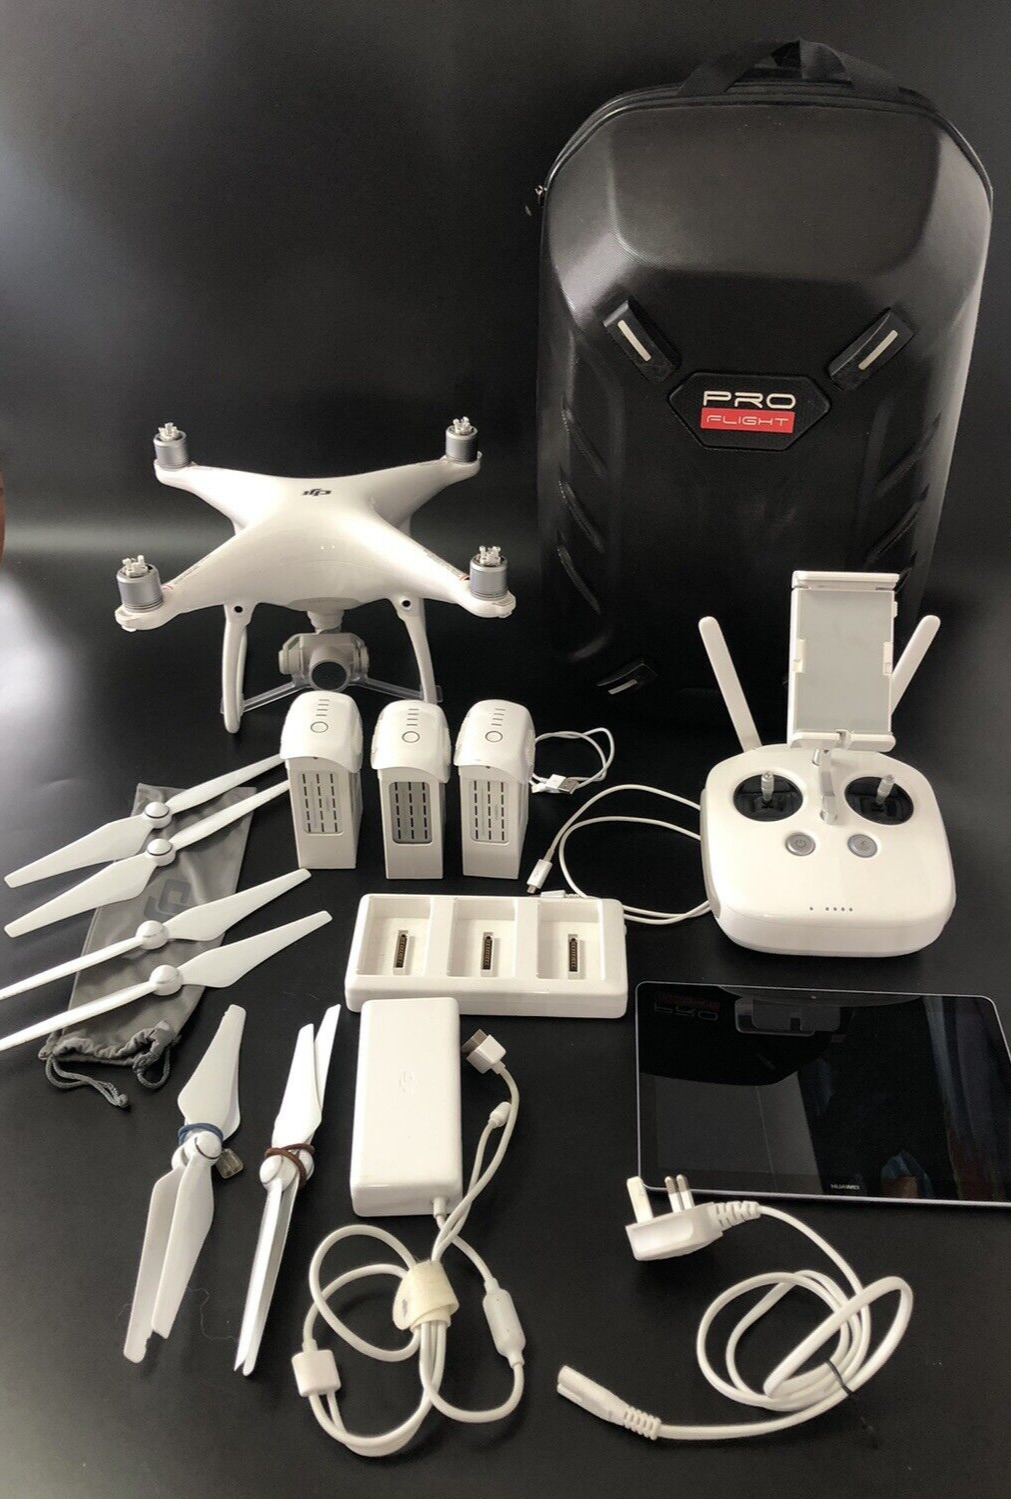 DJI Phantom 4 Drone + Bonus Kit